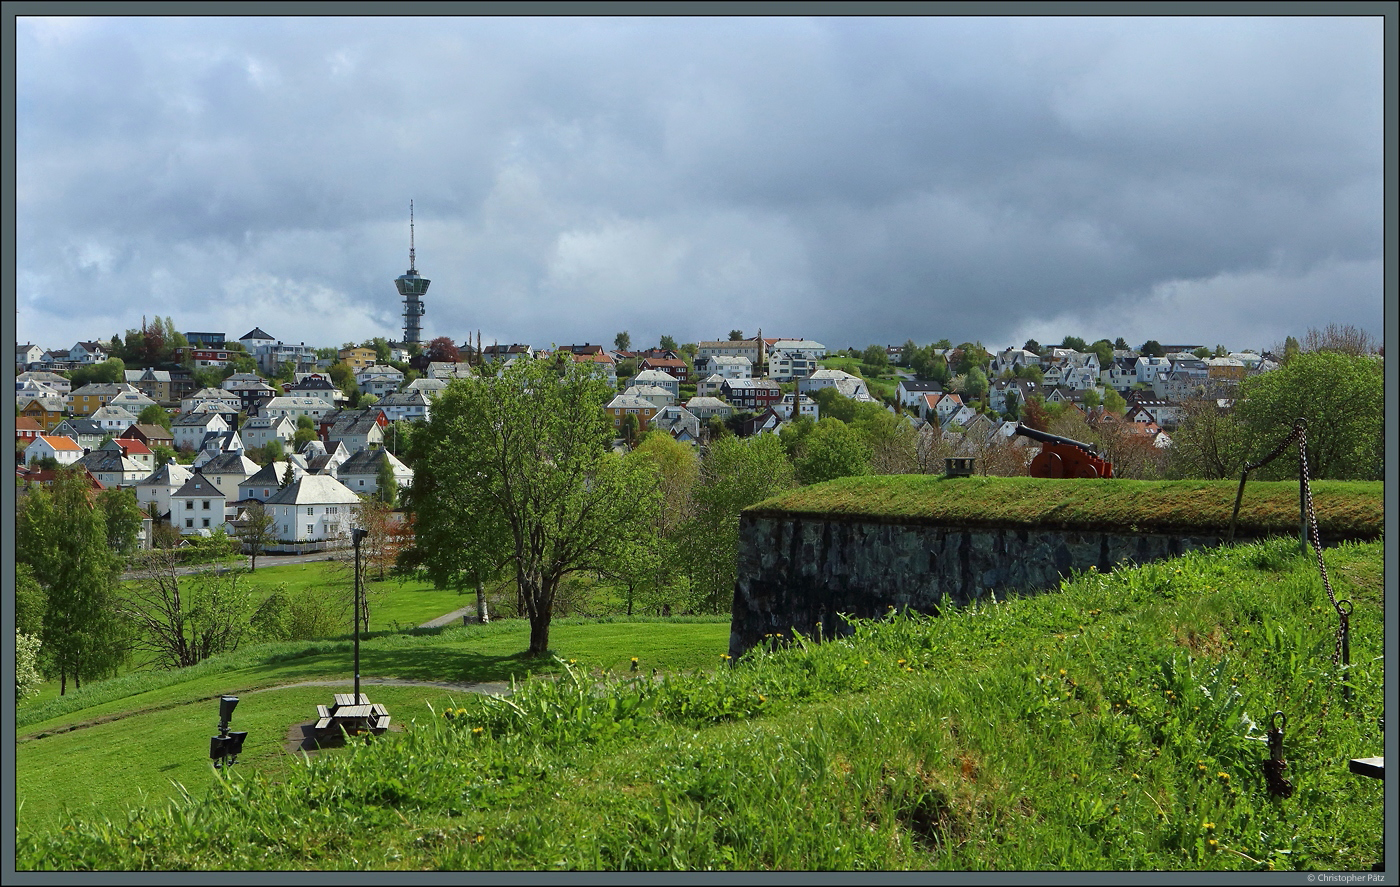 Oberhalb der Festung Kristiansten liegt auf einem Hügel der Fernsehturm Tyholttårnet, der auch eine Aussichtsplattform besitzt. Er wurde 1985 errichtet und befindet sich im Stadtteil Tyhold. (Trondheim, 26.05.2023)